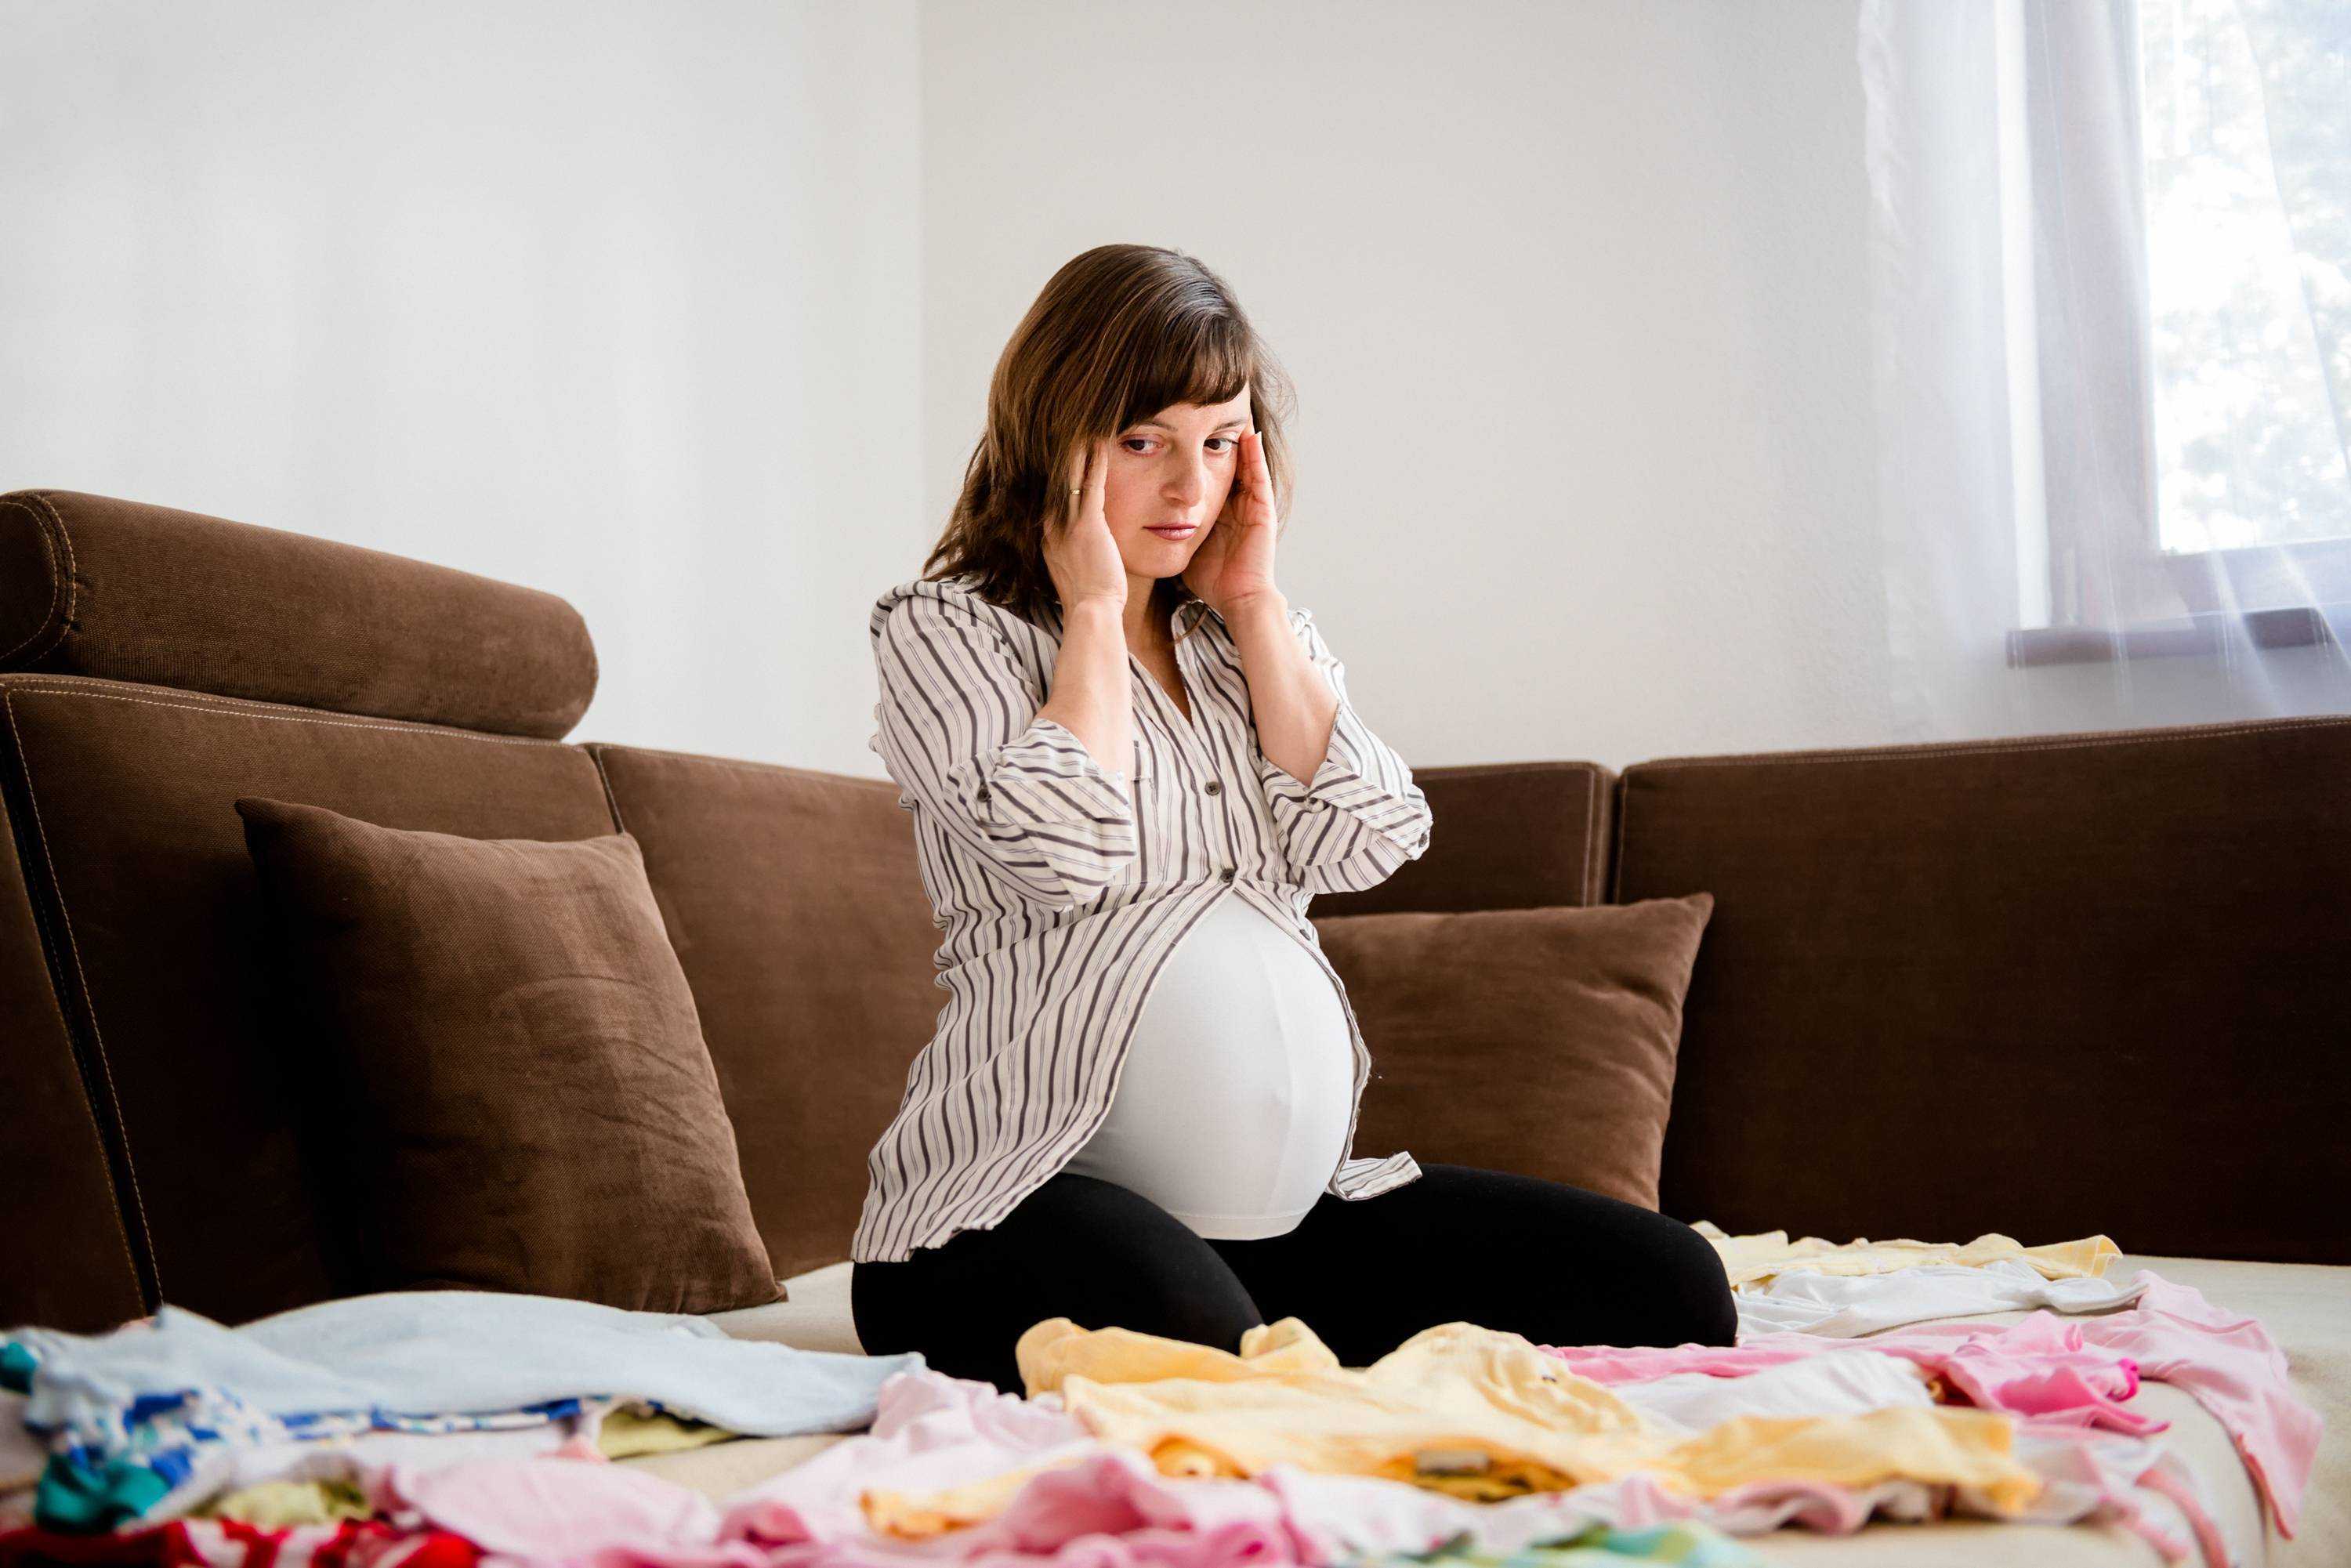 Почему возникает бессонница при беременности в первом триместре Опасно ли такое состояние для женщины и ее малыша Как помочь уснуть будущей маме Можно ли принимать снотворное